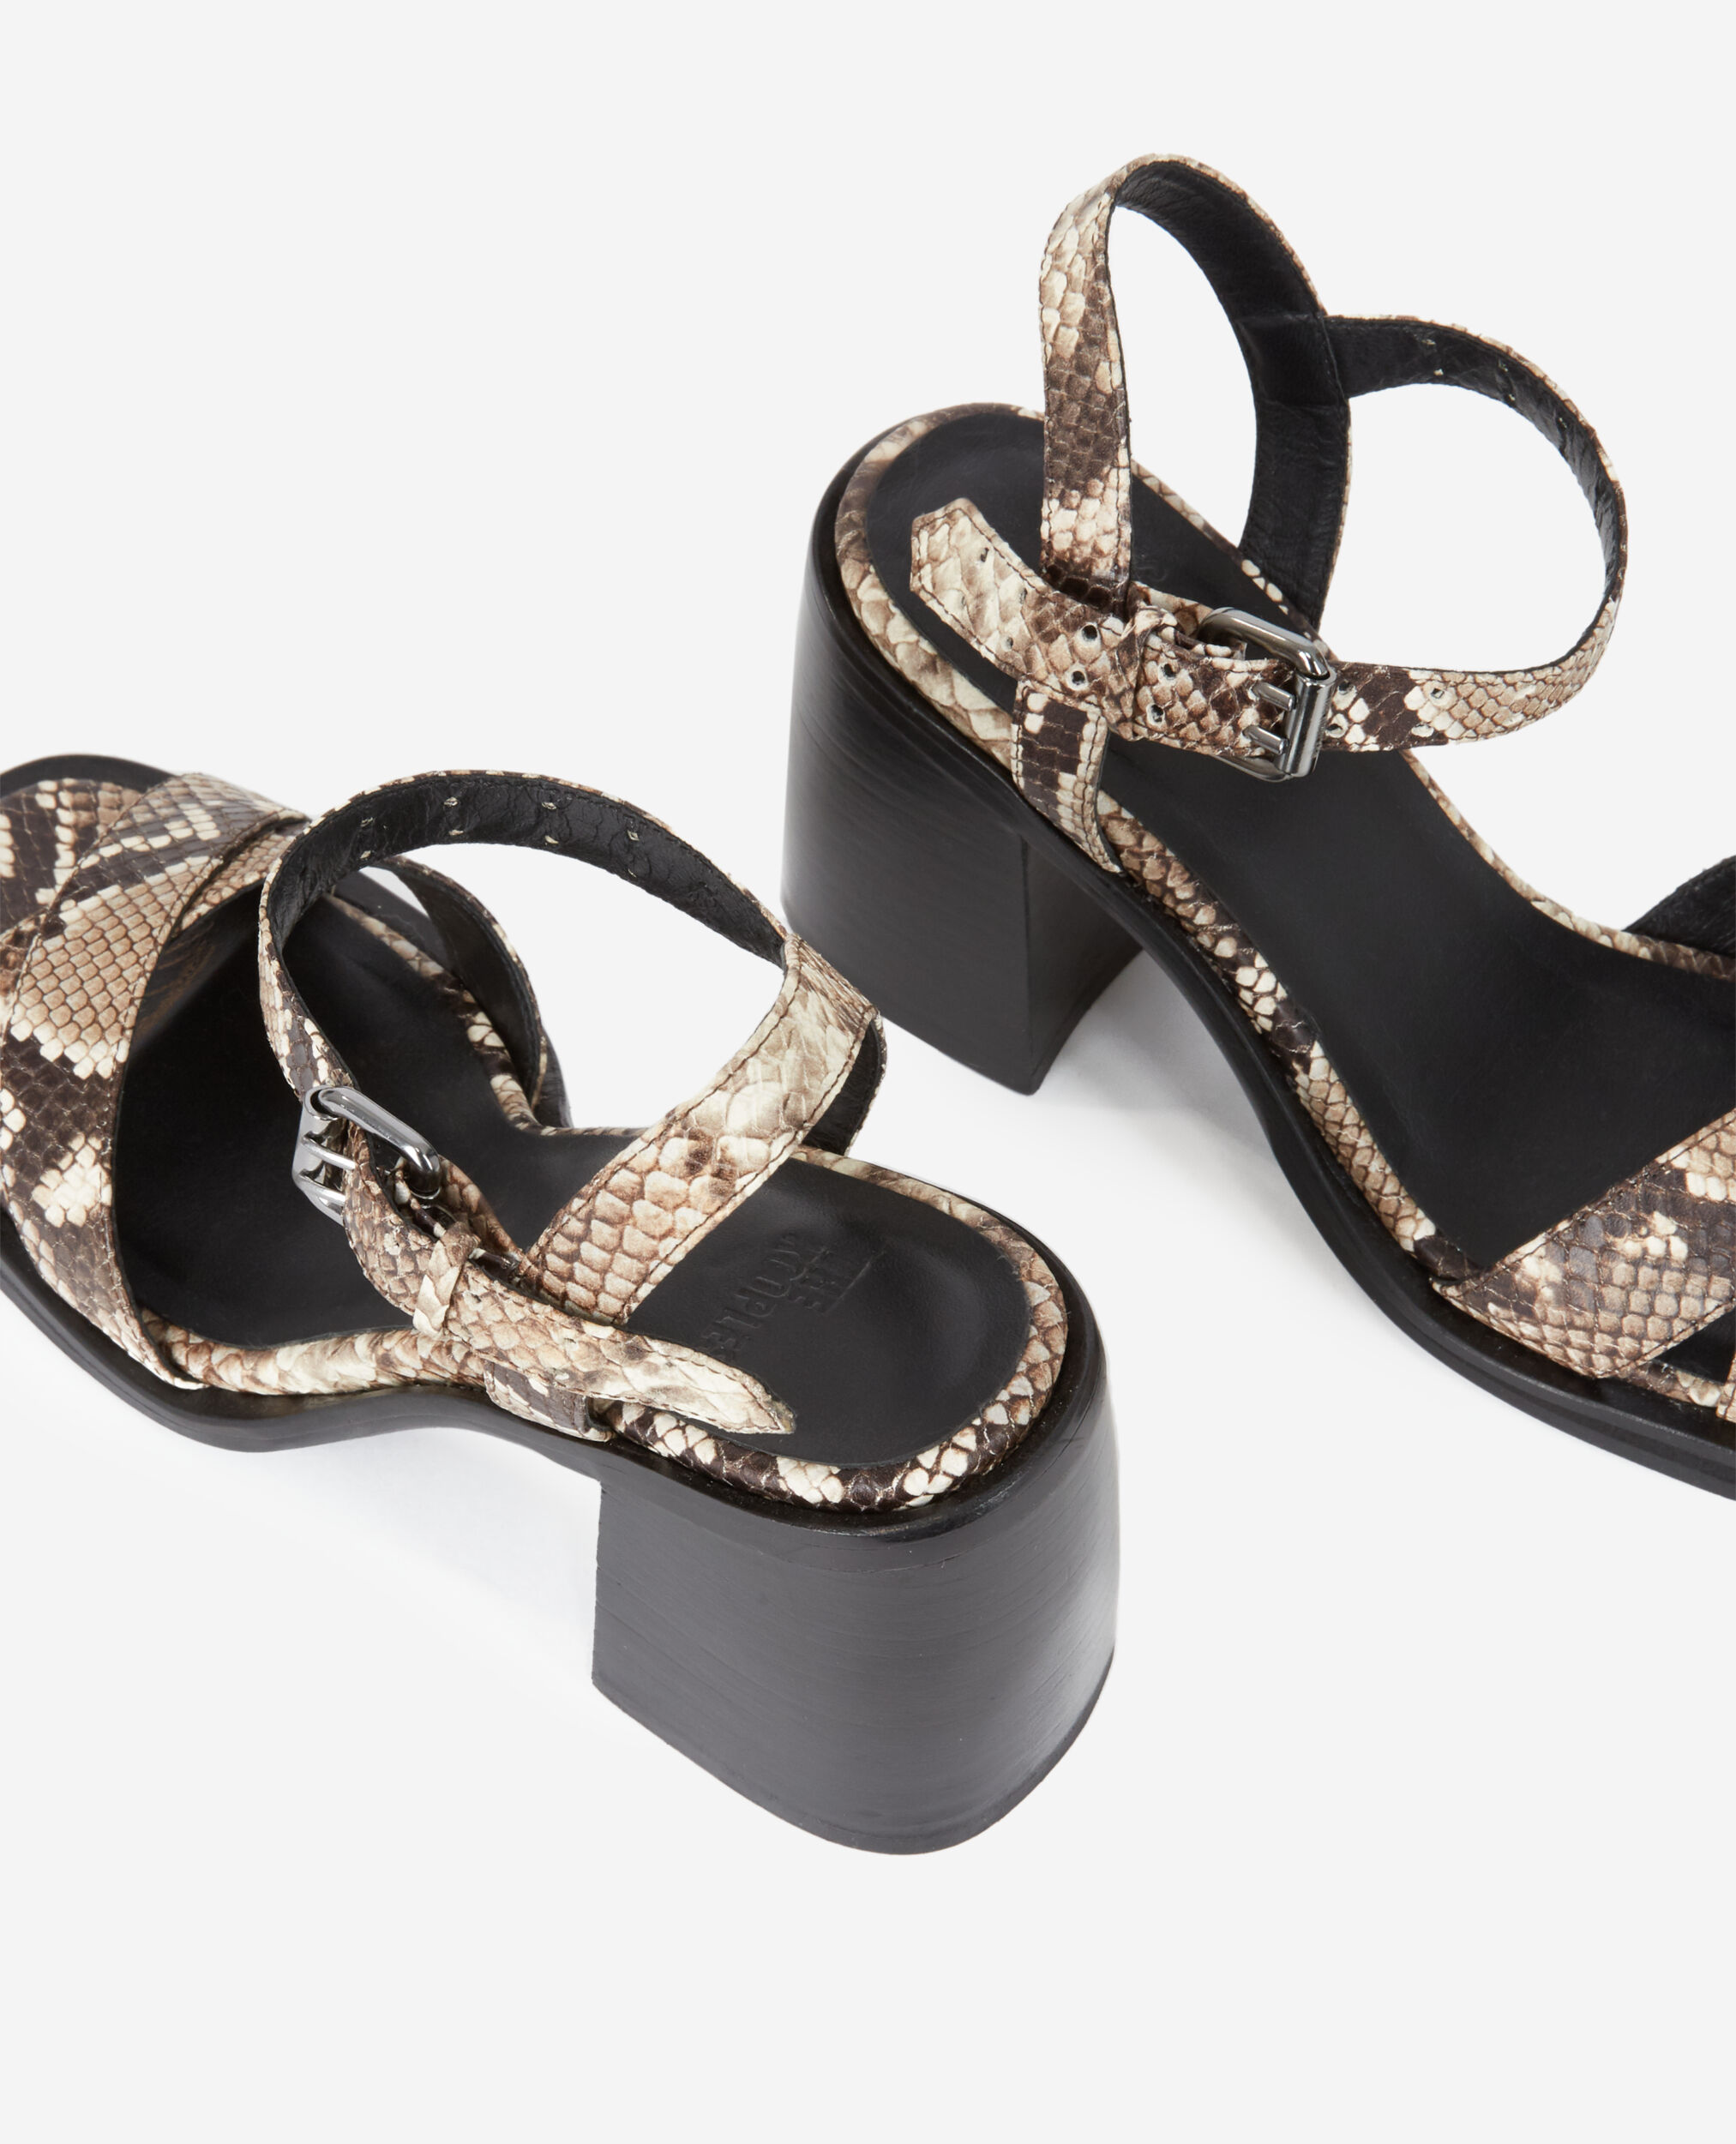 Snakeskin-effect heeled leather sandals, BEIGE-BROWN, hi-res image number null